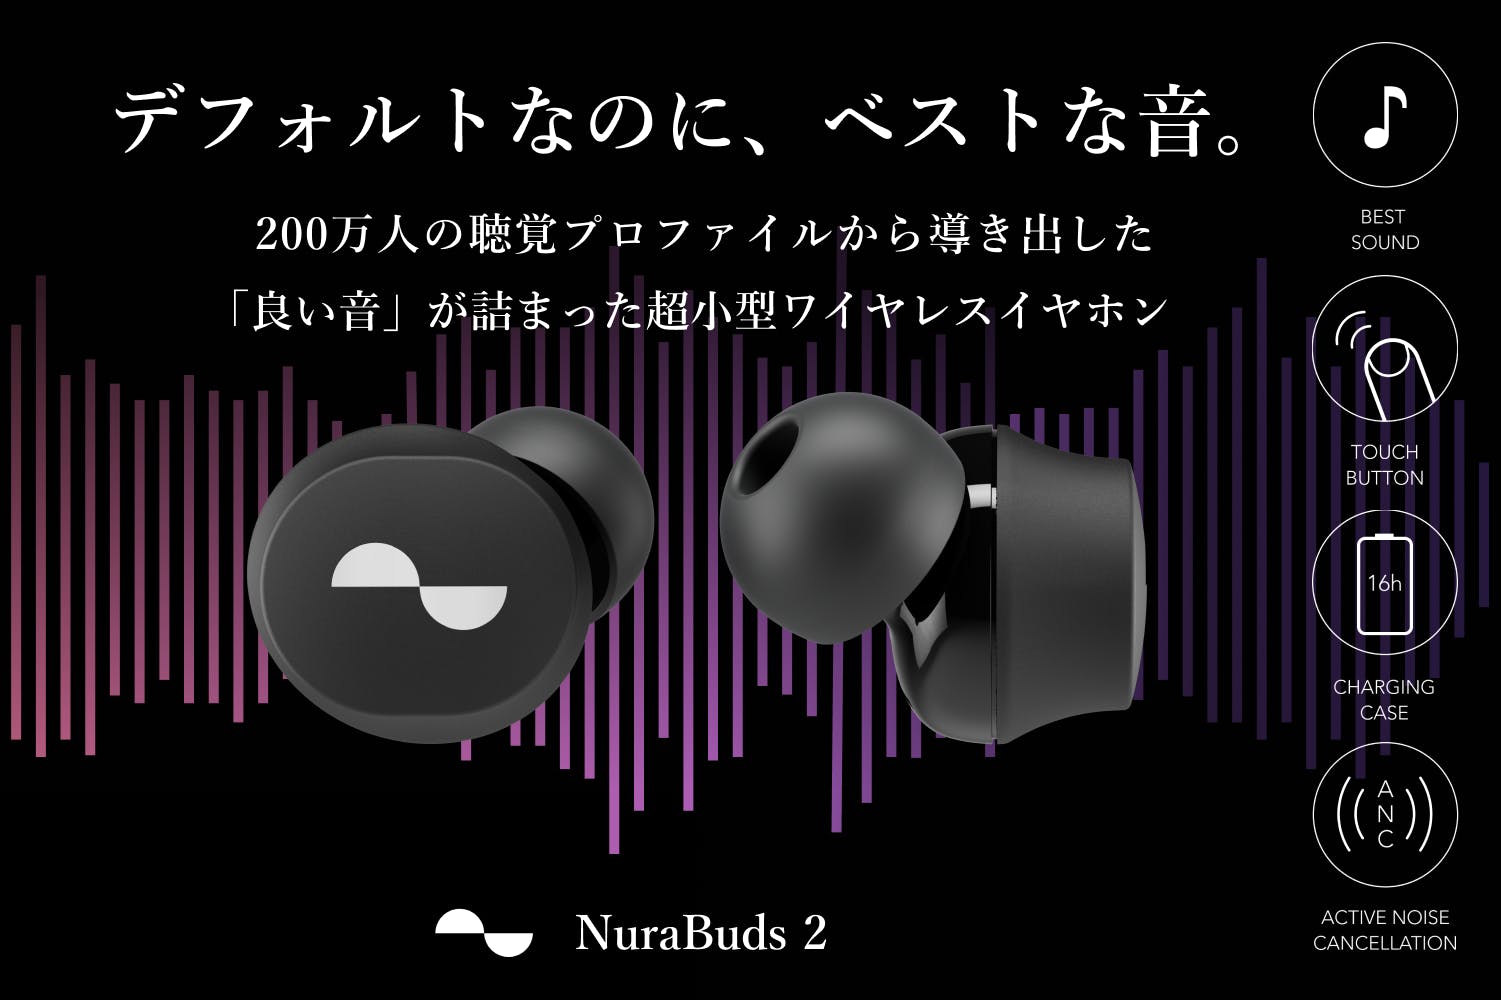 200万人の聴覚プロファイルに合わせて音質を最適化した「NuraBuds2」